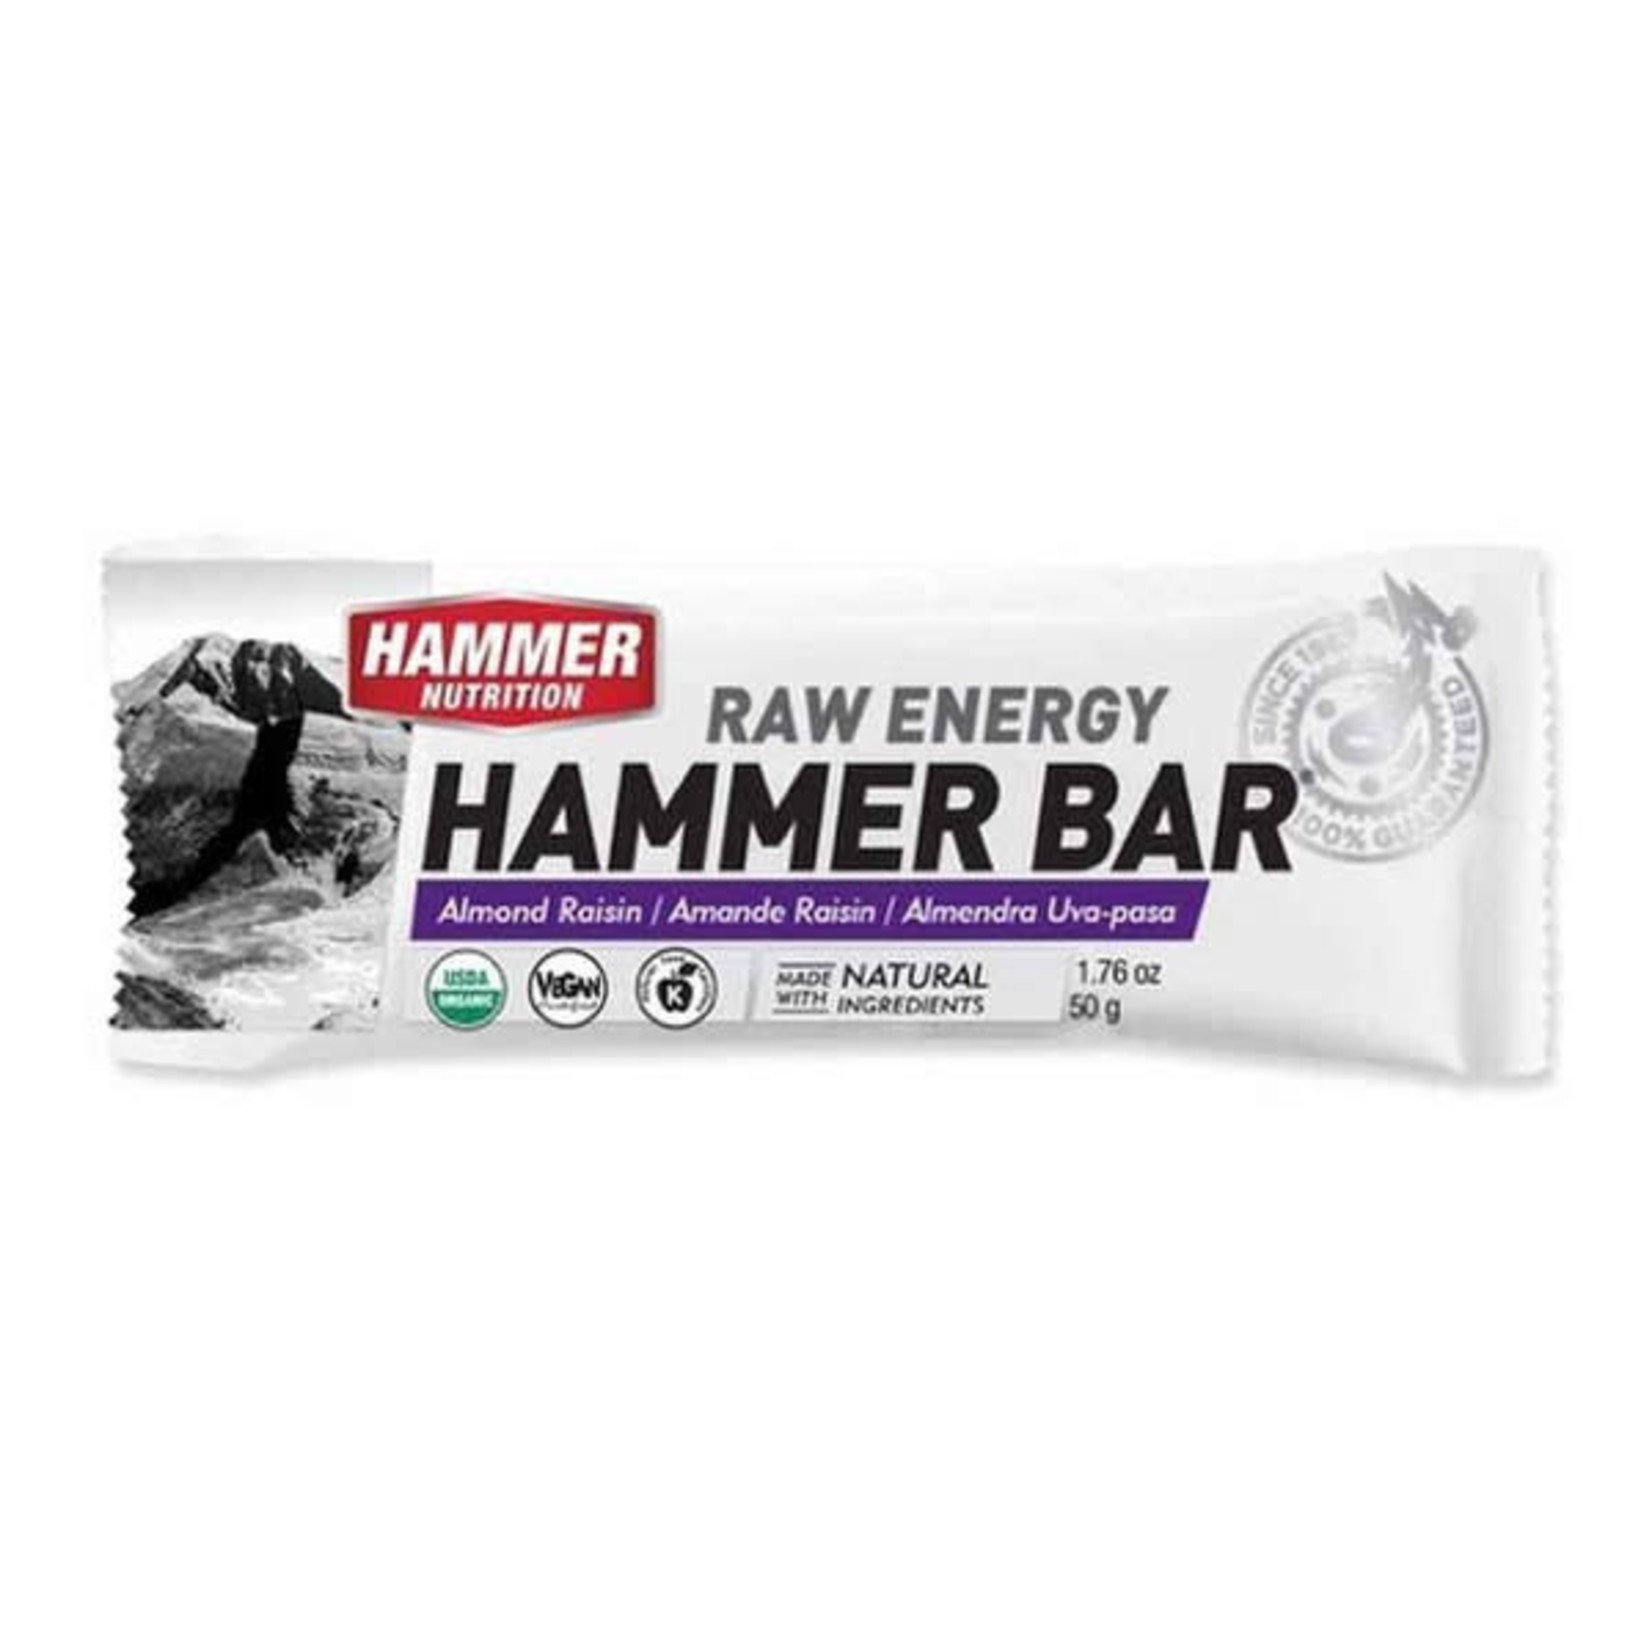 Hammer Nutrition Hammer Bar 1.76oz